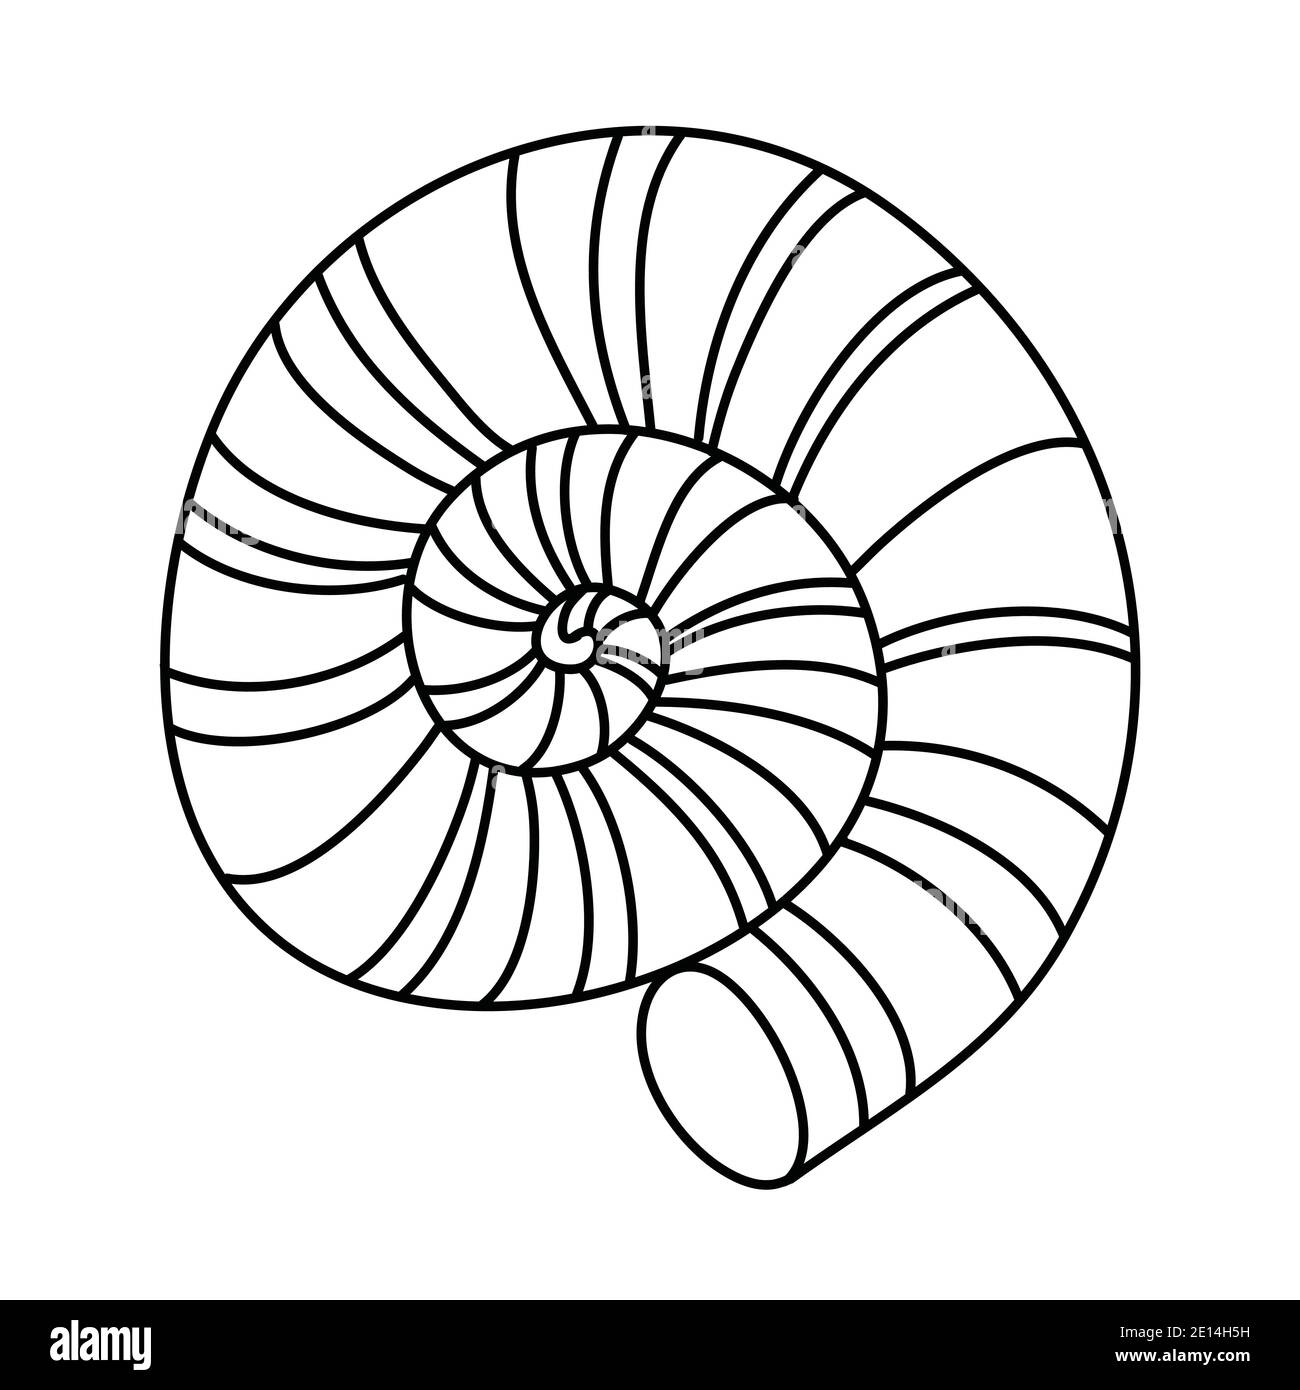 Moulinet rond, coquille de mollusque calcaire, illustration noire et blanche de vecteur de caniche dessinés à la main Illustration de Vecteur